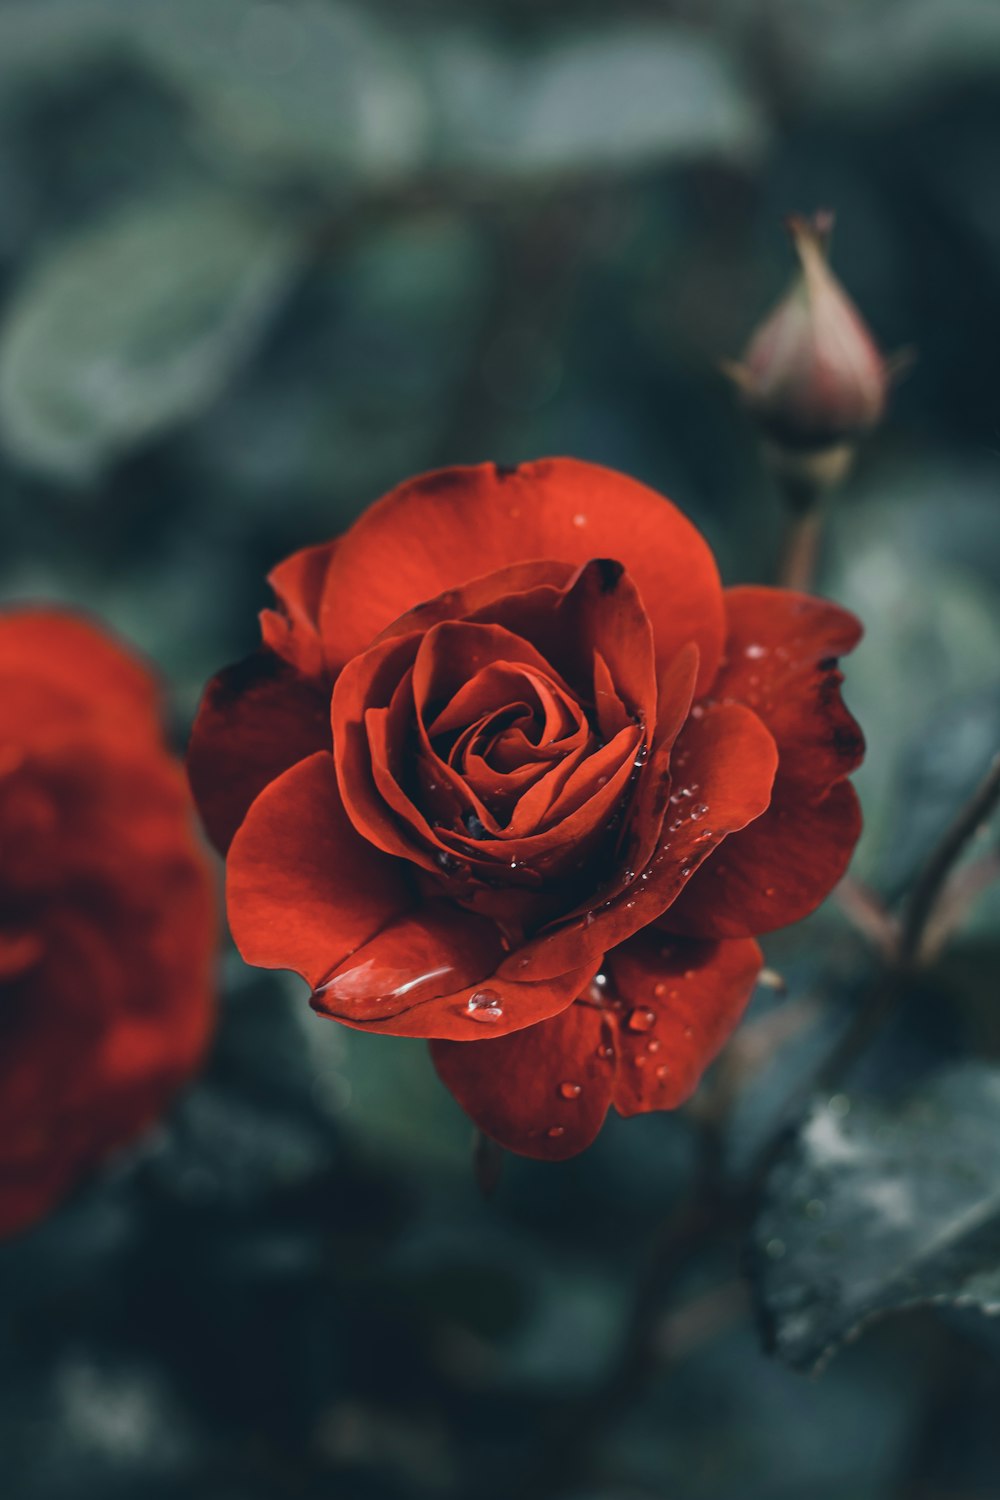 rosa rossa in fiore nella fotografia ravvicinata